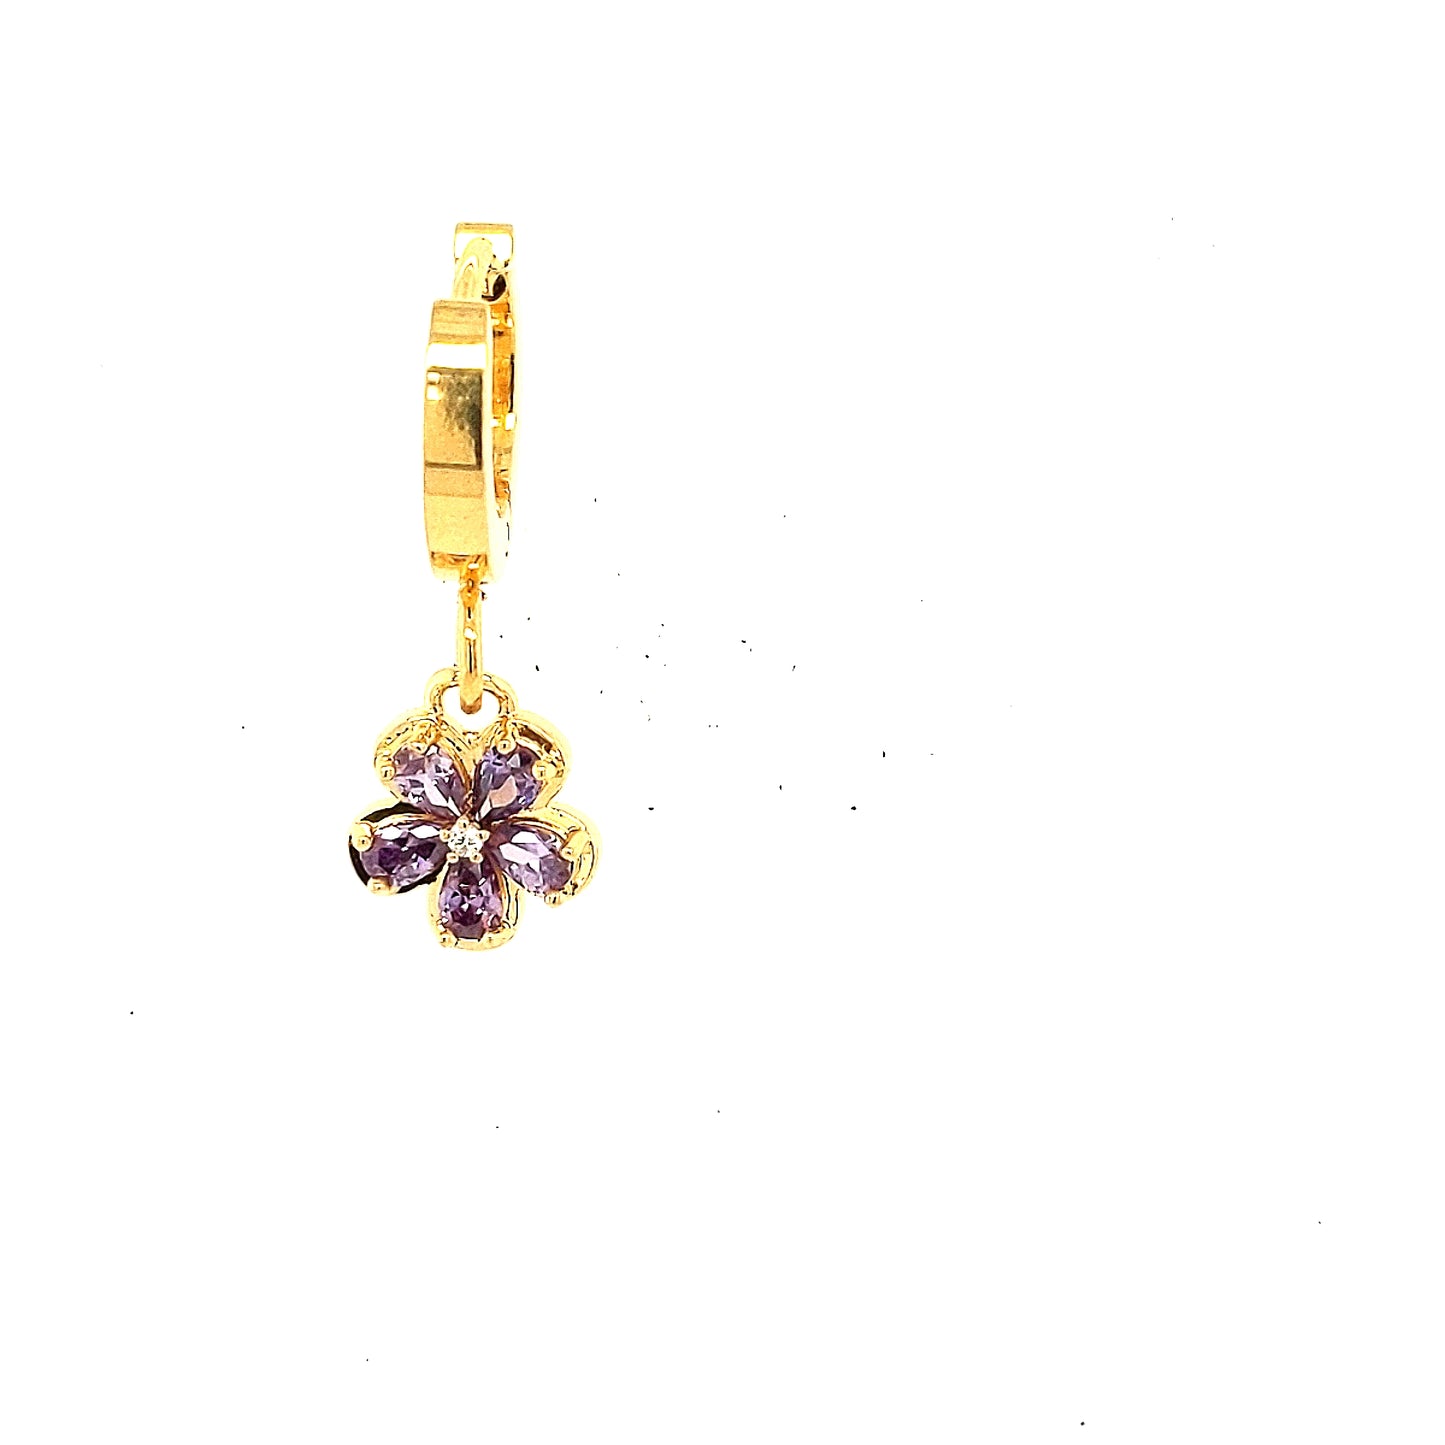 Mini Flower Surgical Steel Earring - HK Jewels